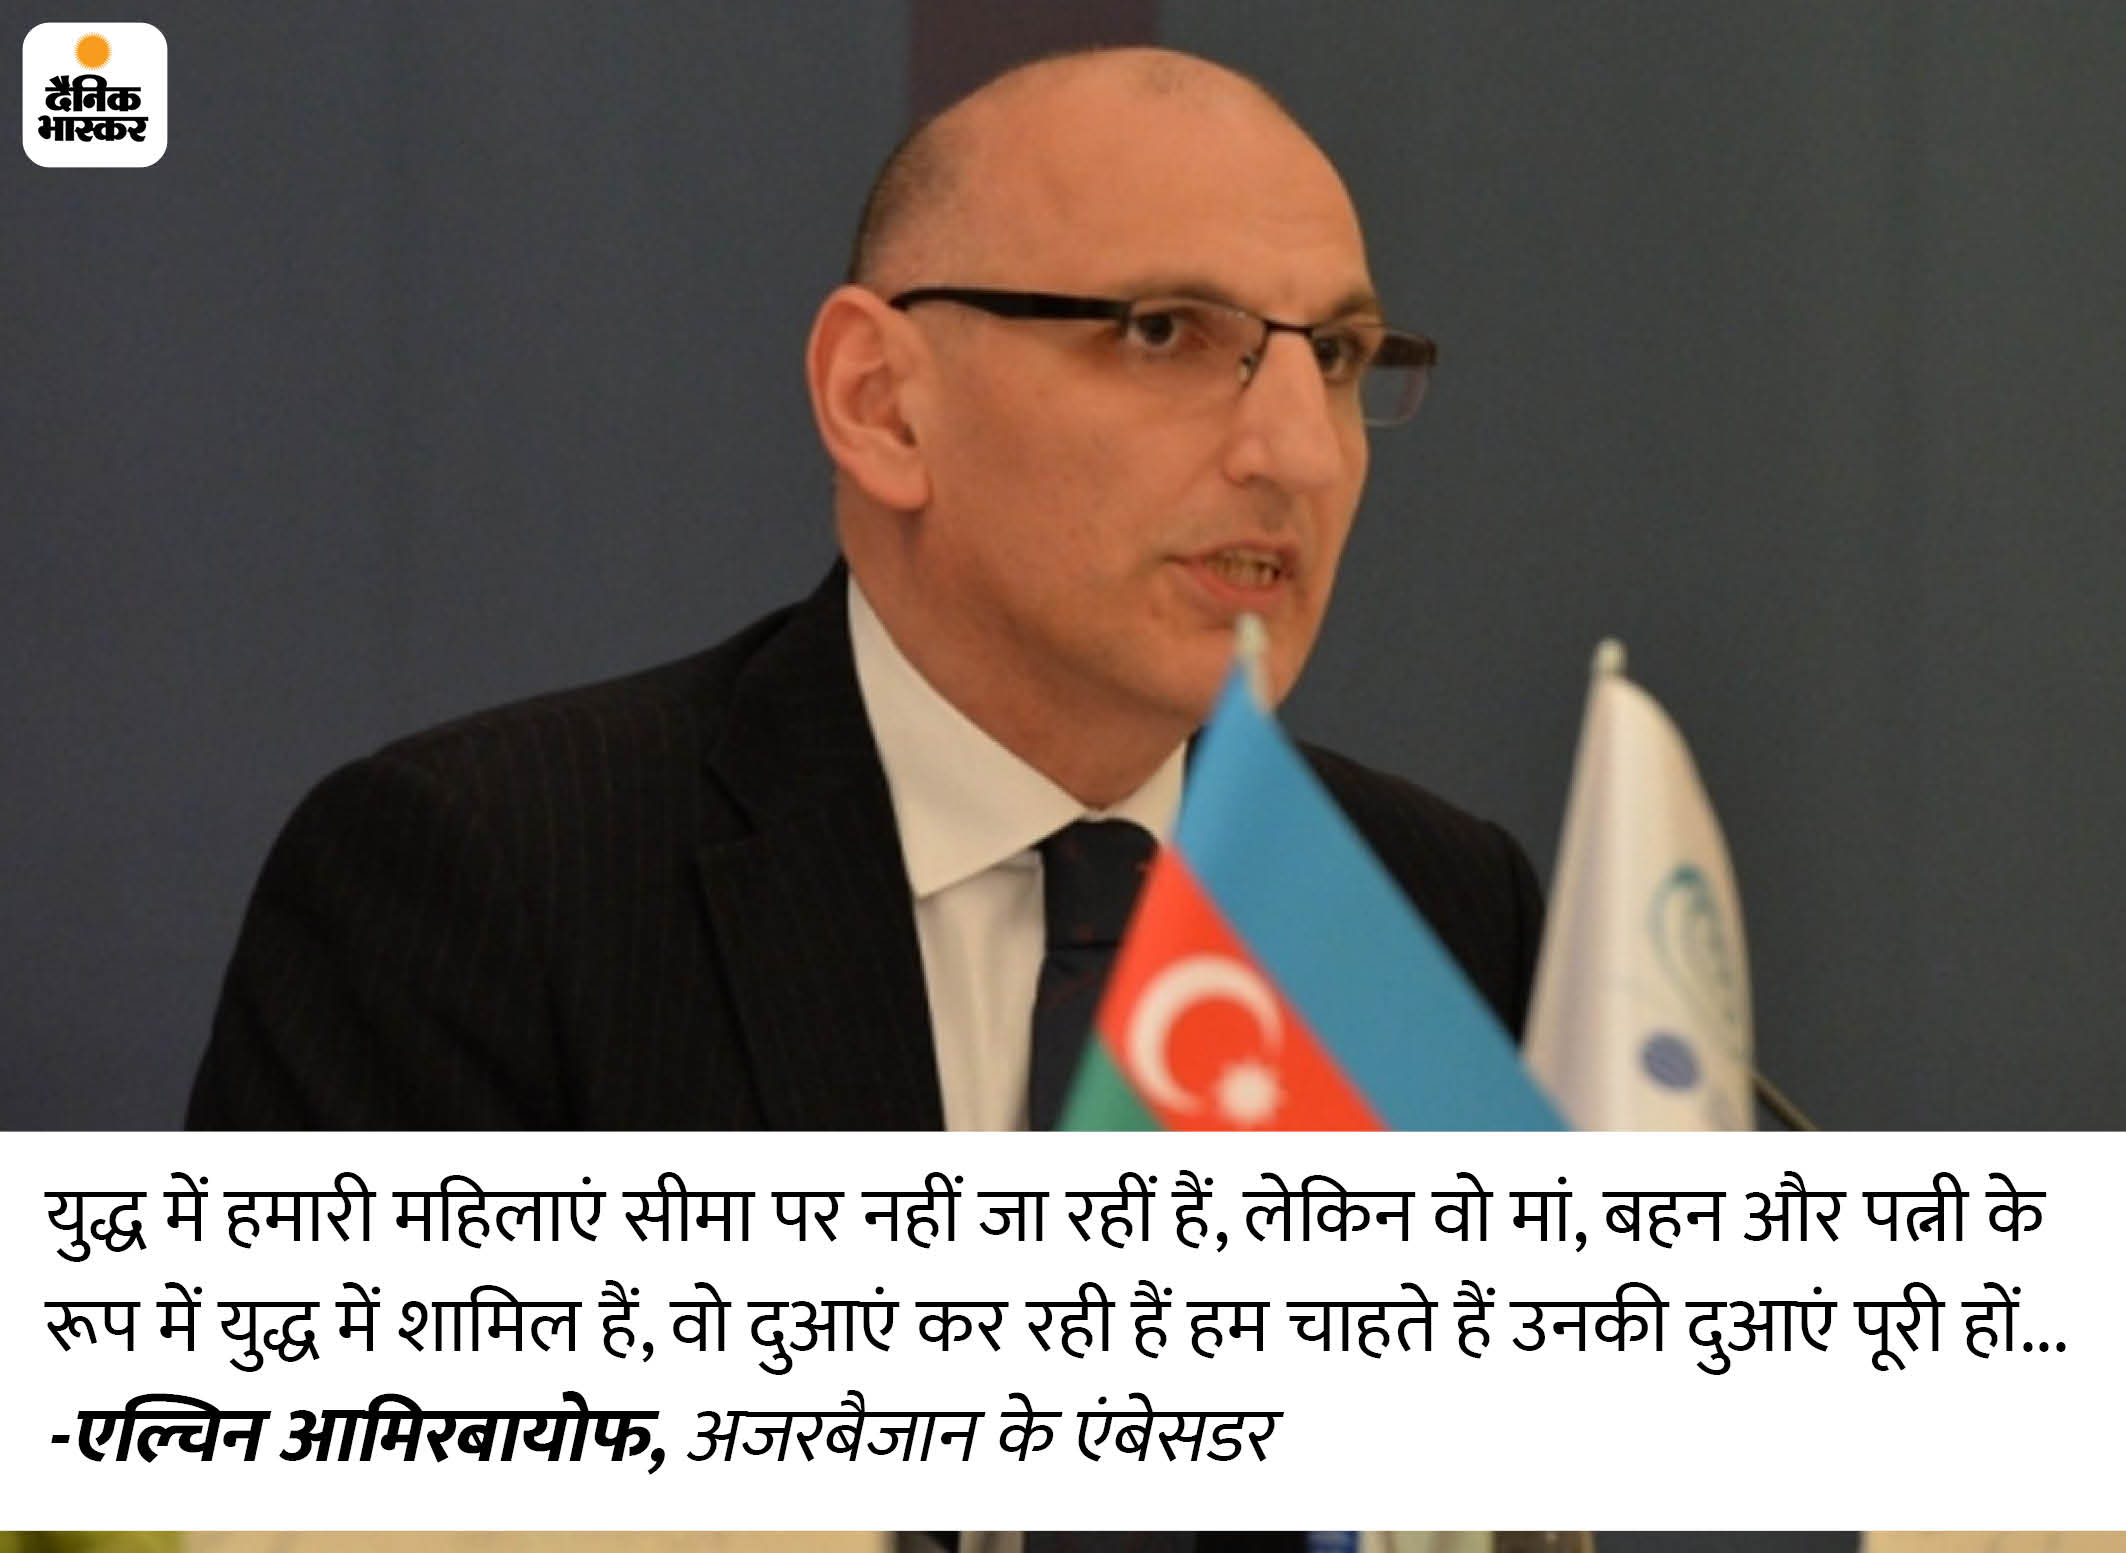 भास्कर इंटरव्यू: भारत हमारी सरहद का सम्मान करता है और हम इसके लिए शुक्रगुजार हैं- अजरबैजान